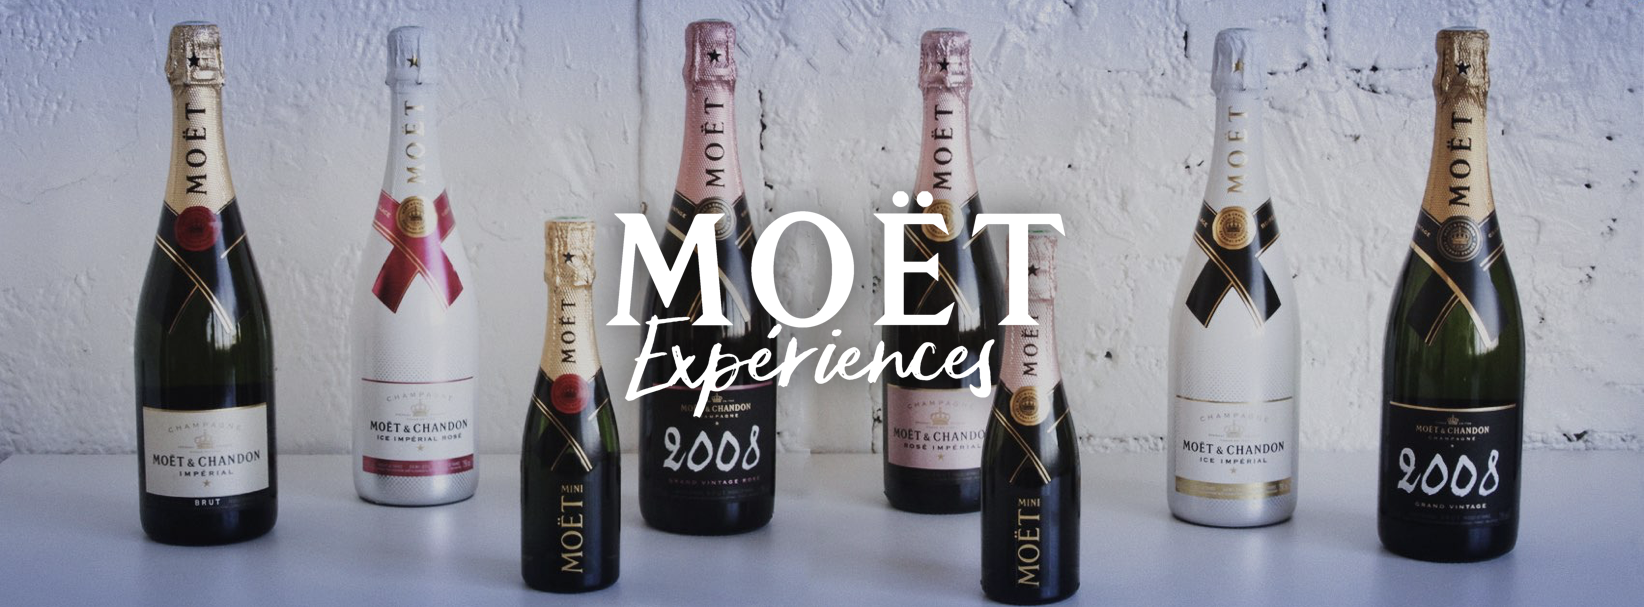 MOET EXPERIENCES LAPPOMS lifestyle blog champagne